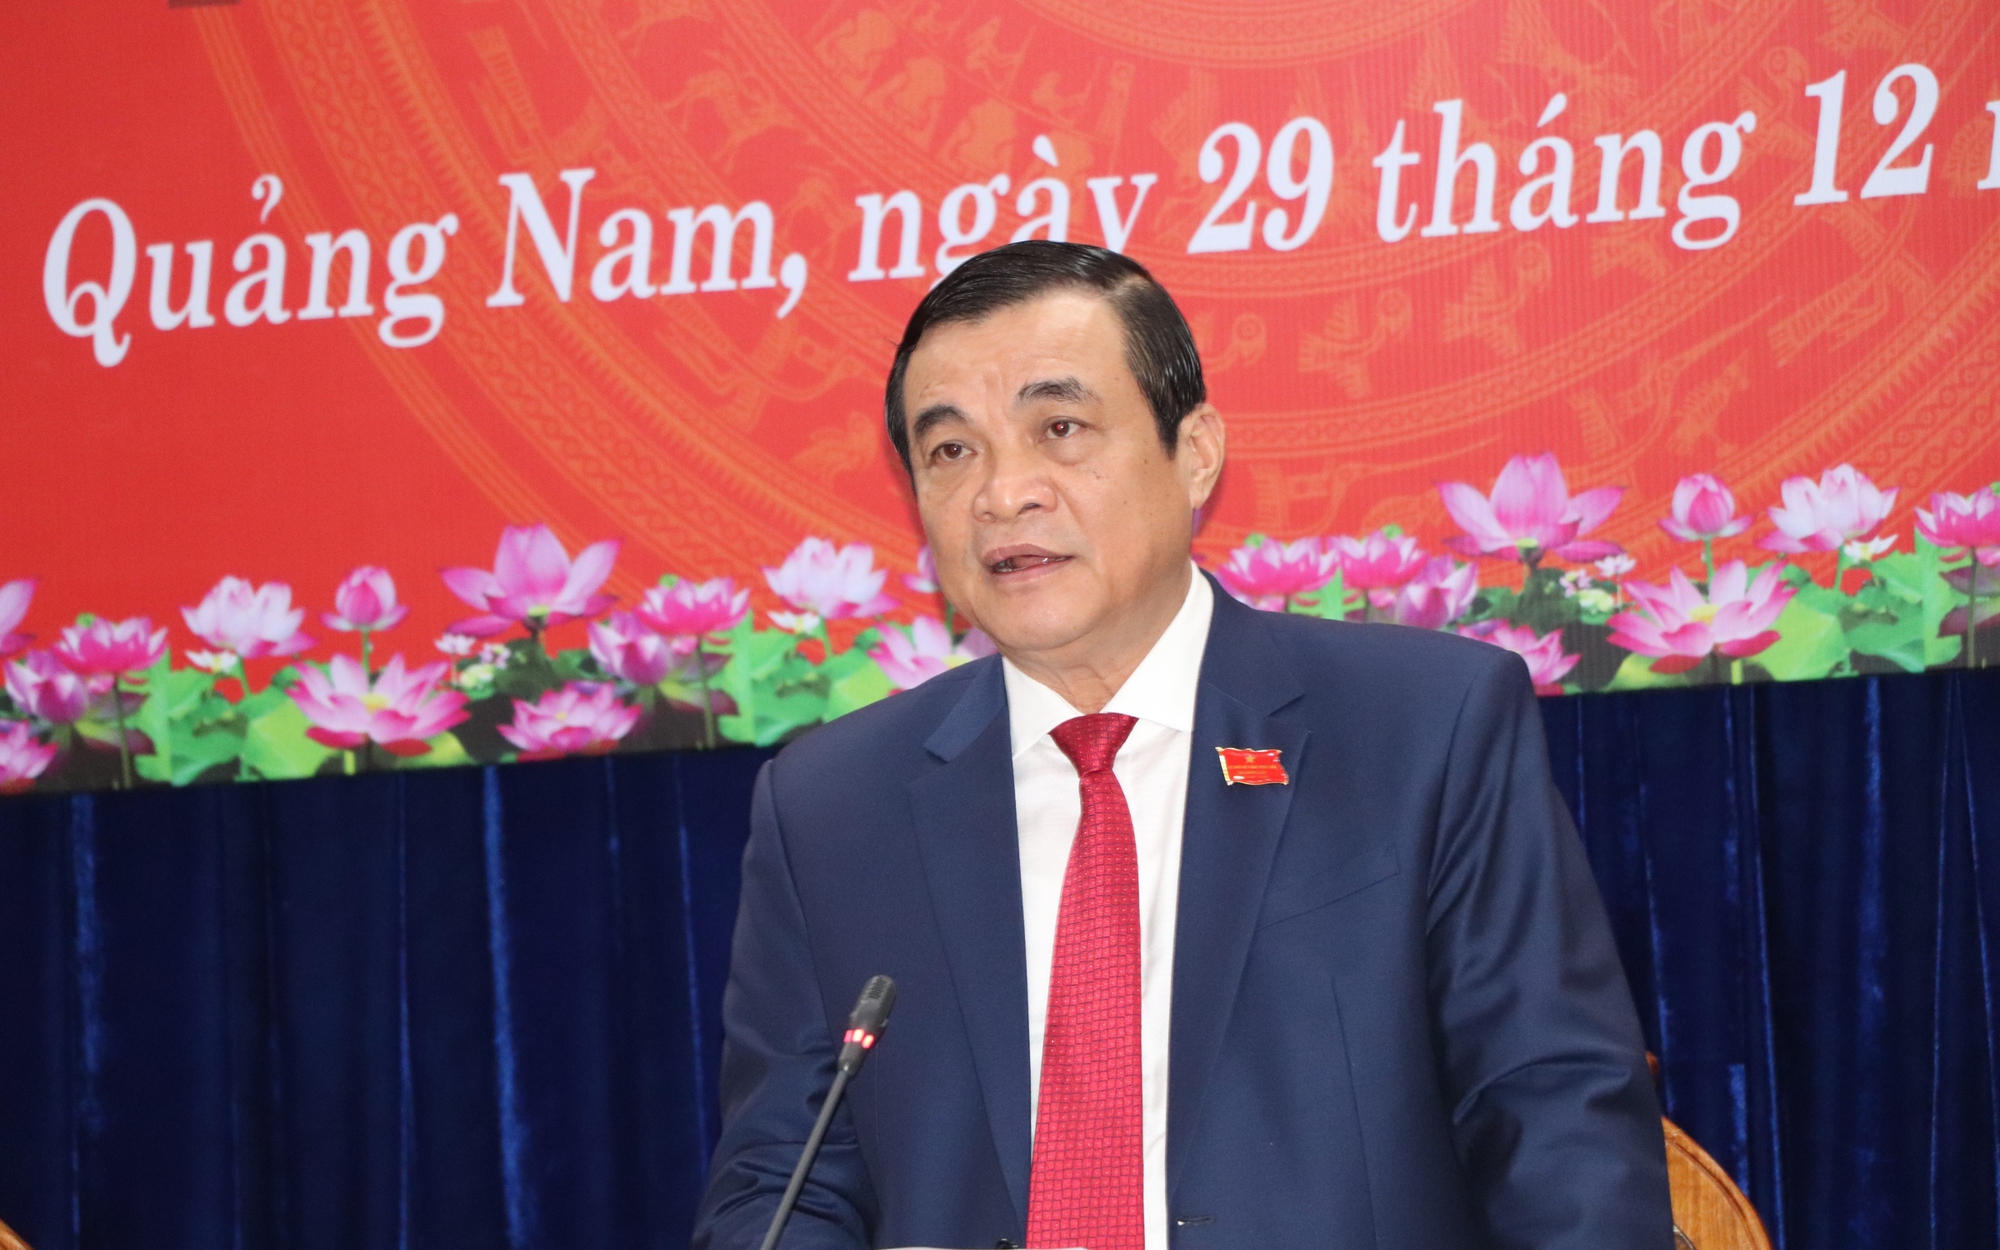 Bí thư Quảng Nam Phan Việt Cường nghỉ hưu ở tuổi 60